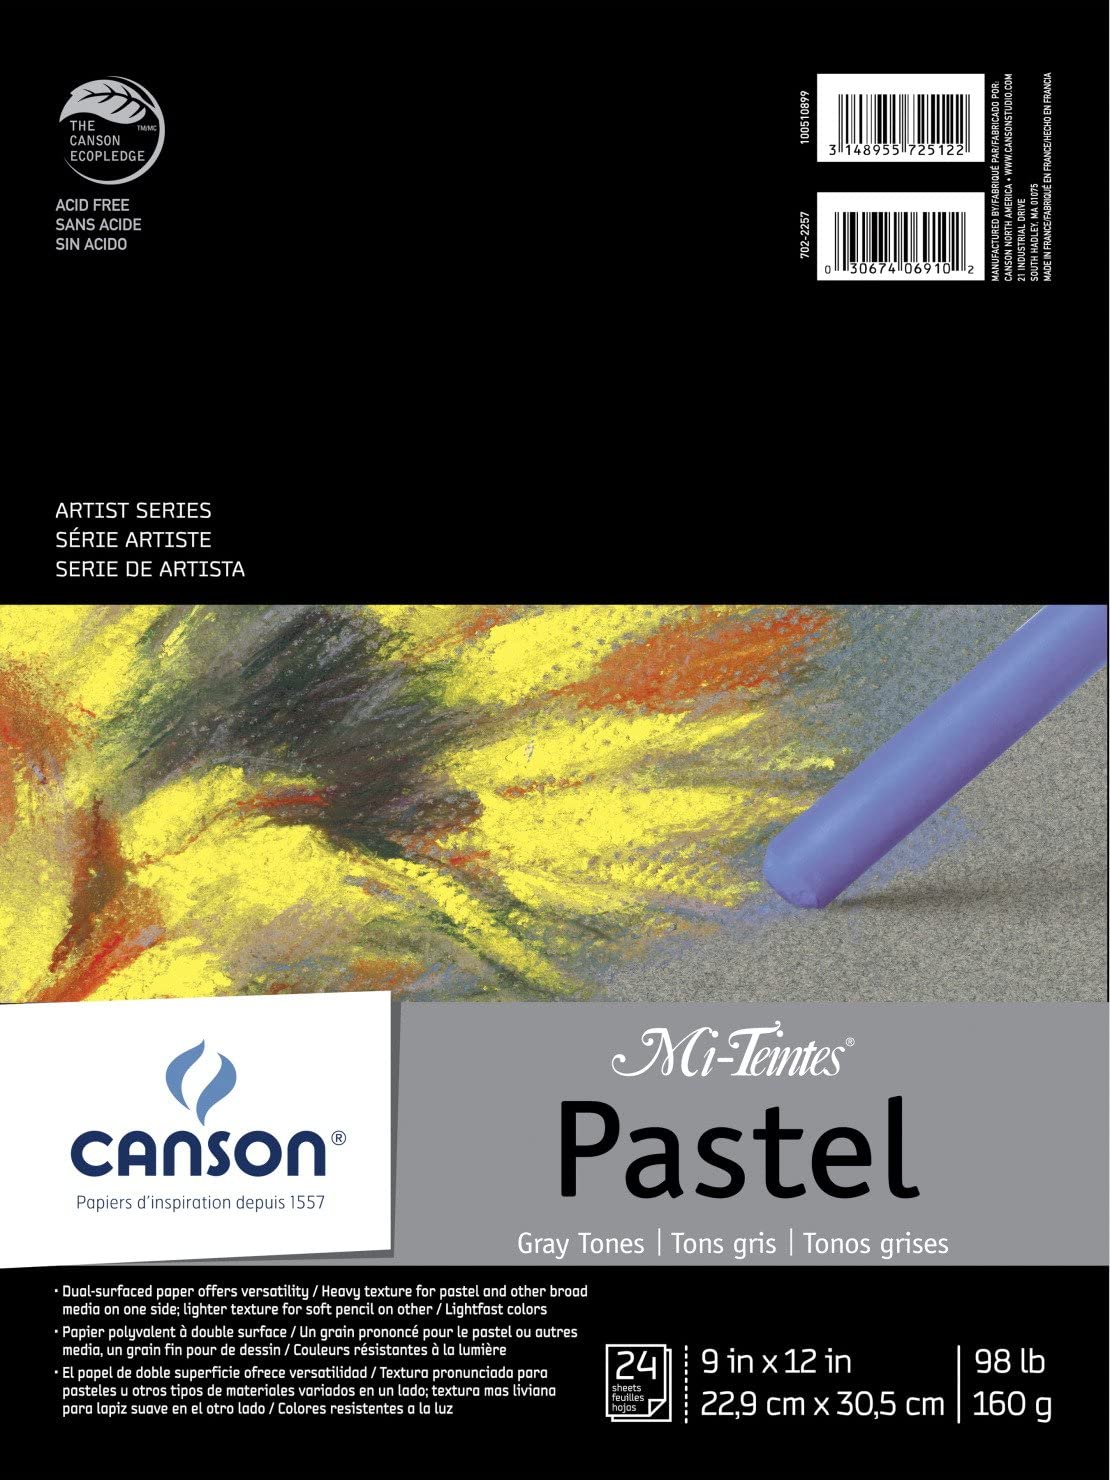 Canson Mi-Teintes Pastel Pads - Wyndham Art Supplies